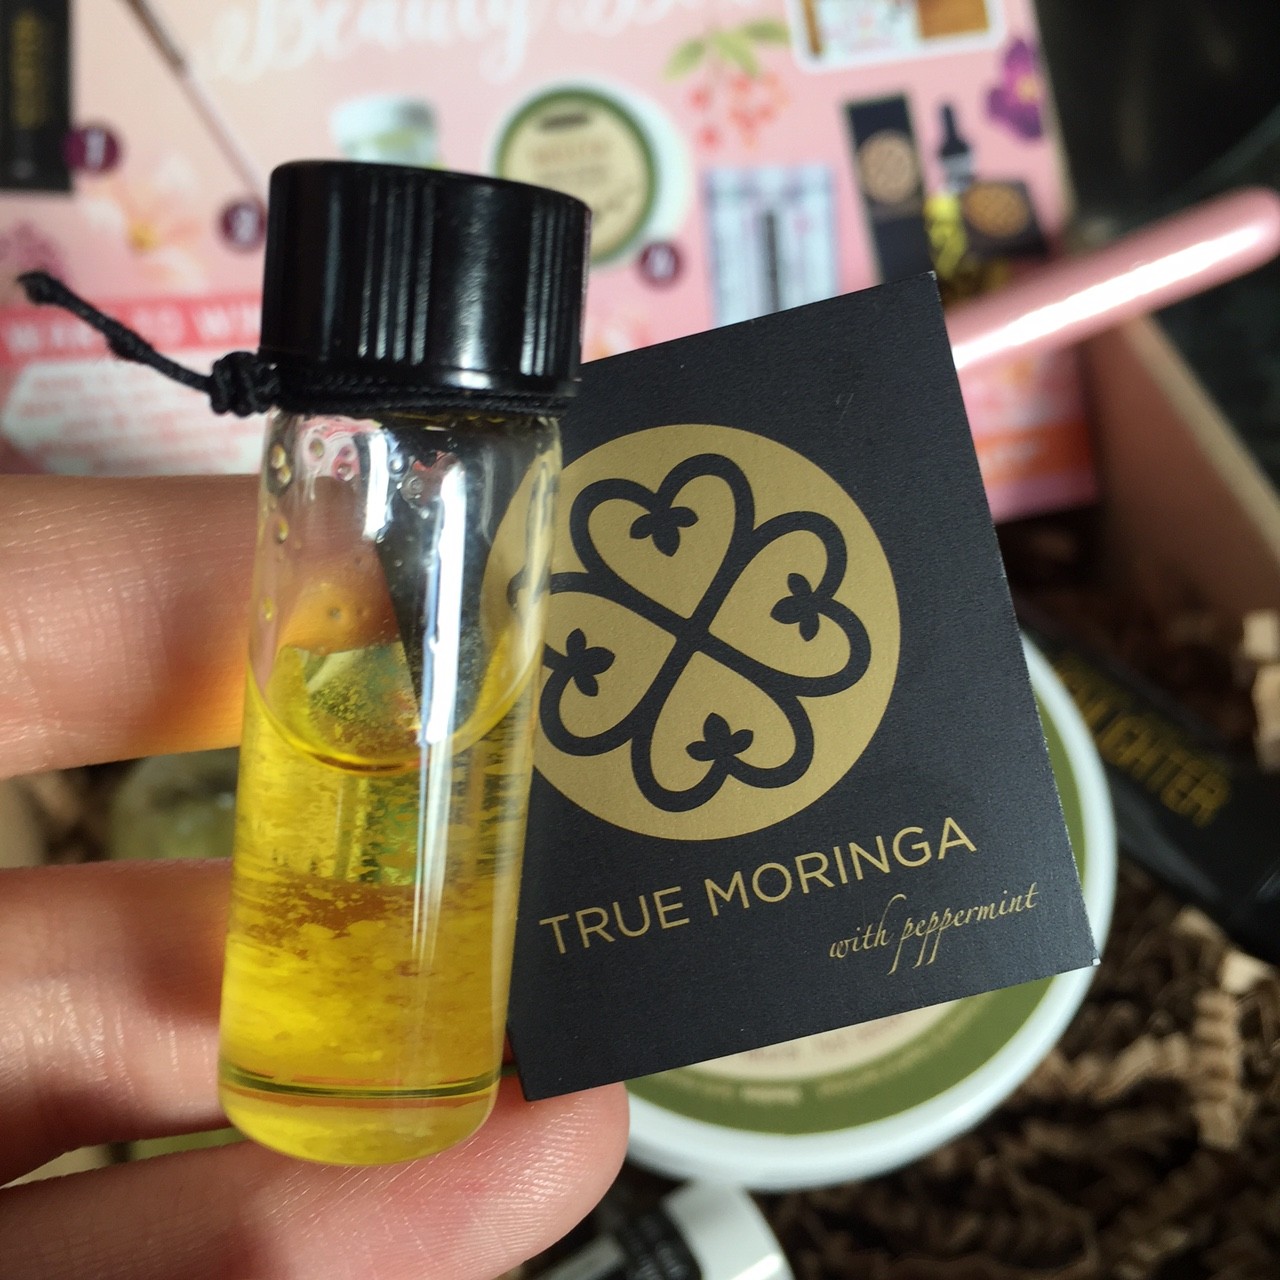 True Moringa peppermint body oil